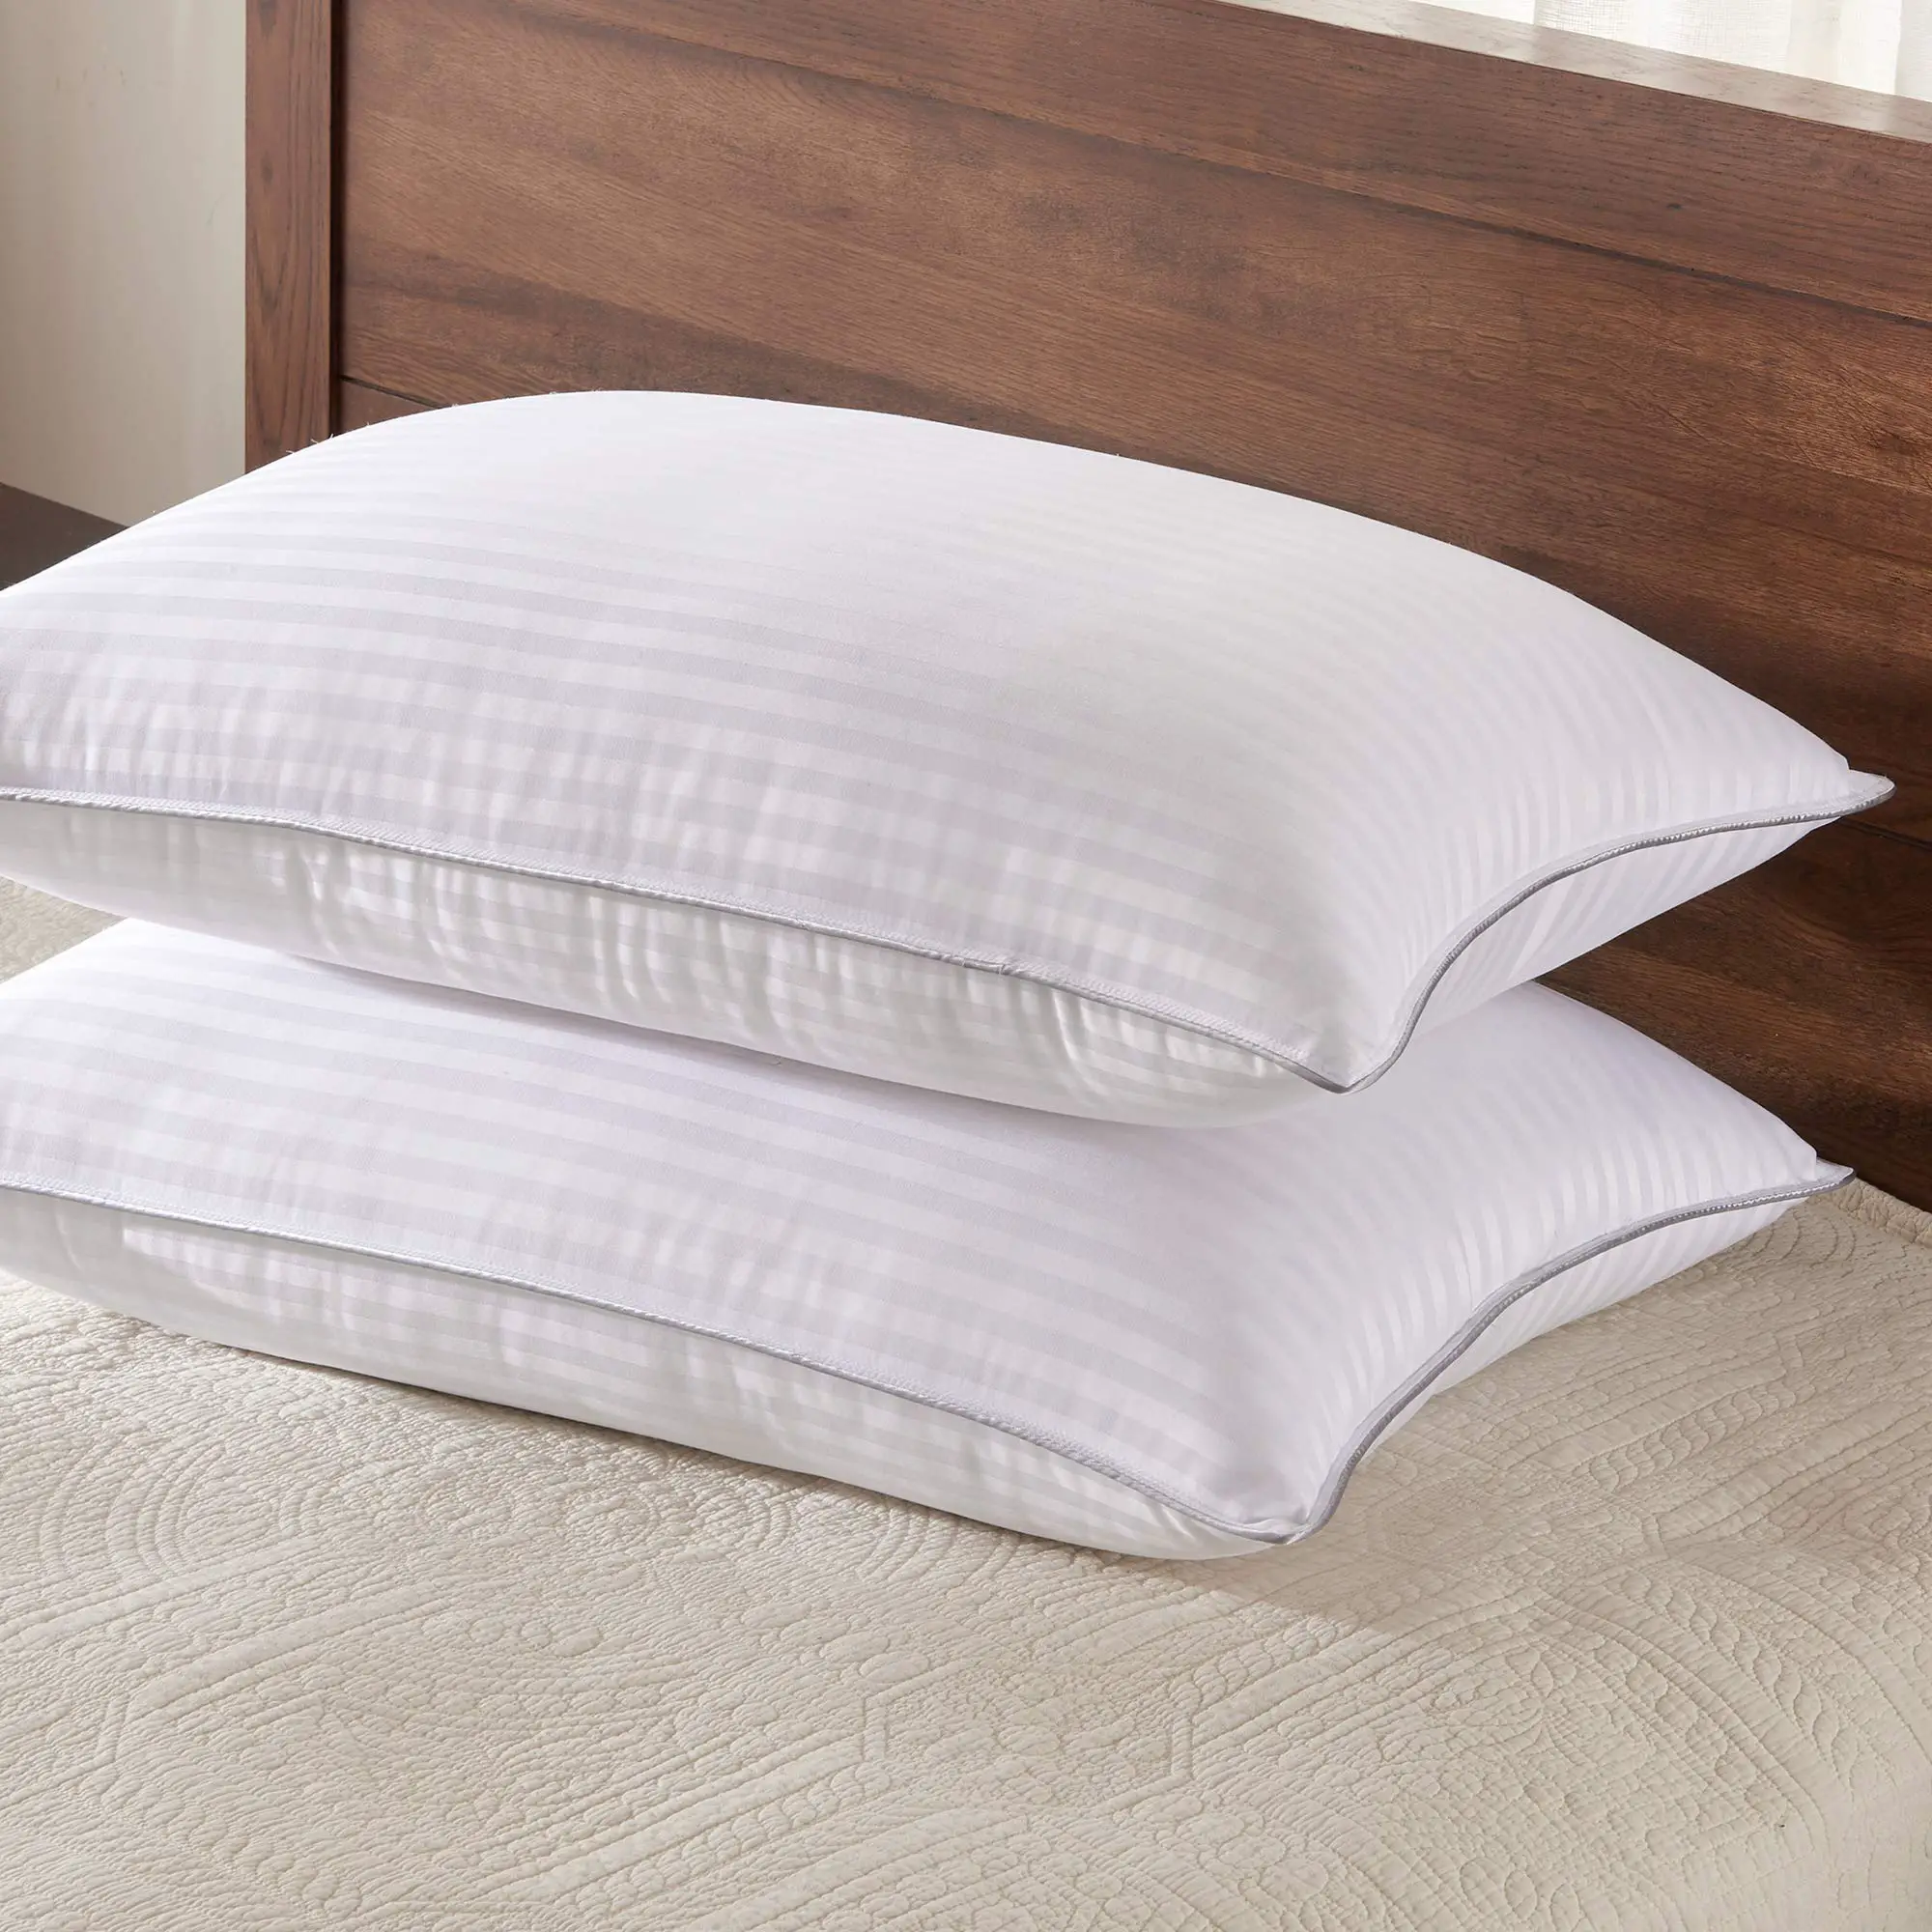 Queen Size Bed Pillows 2 Pack Super Soft Pillow Bamboo Materials Fill ...